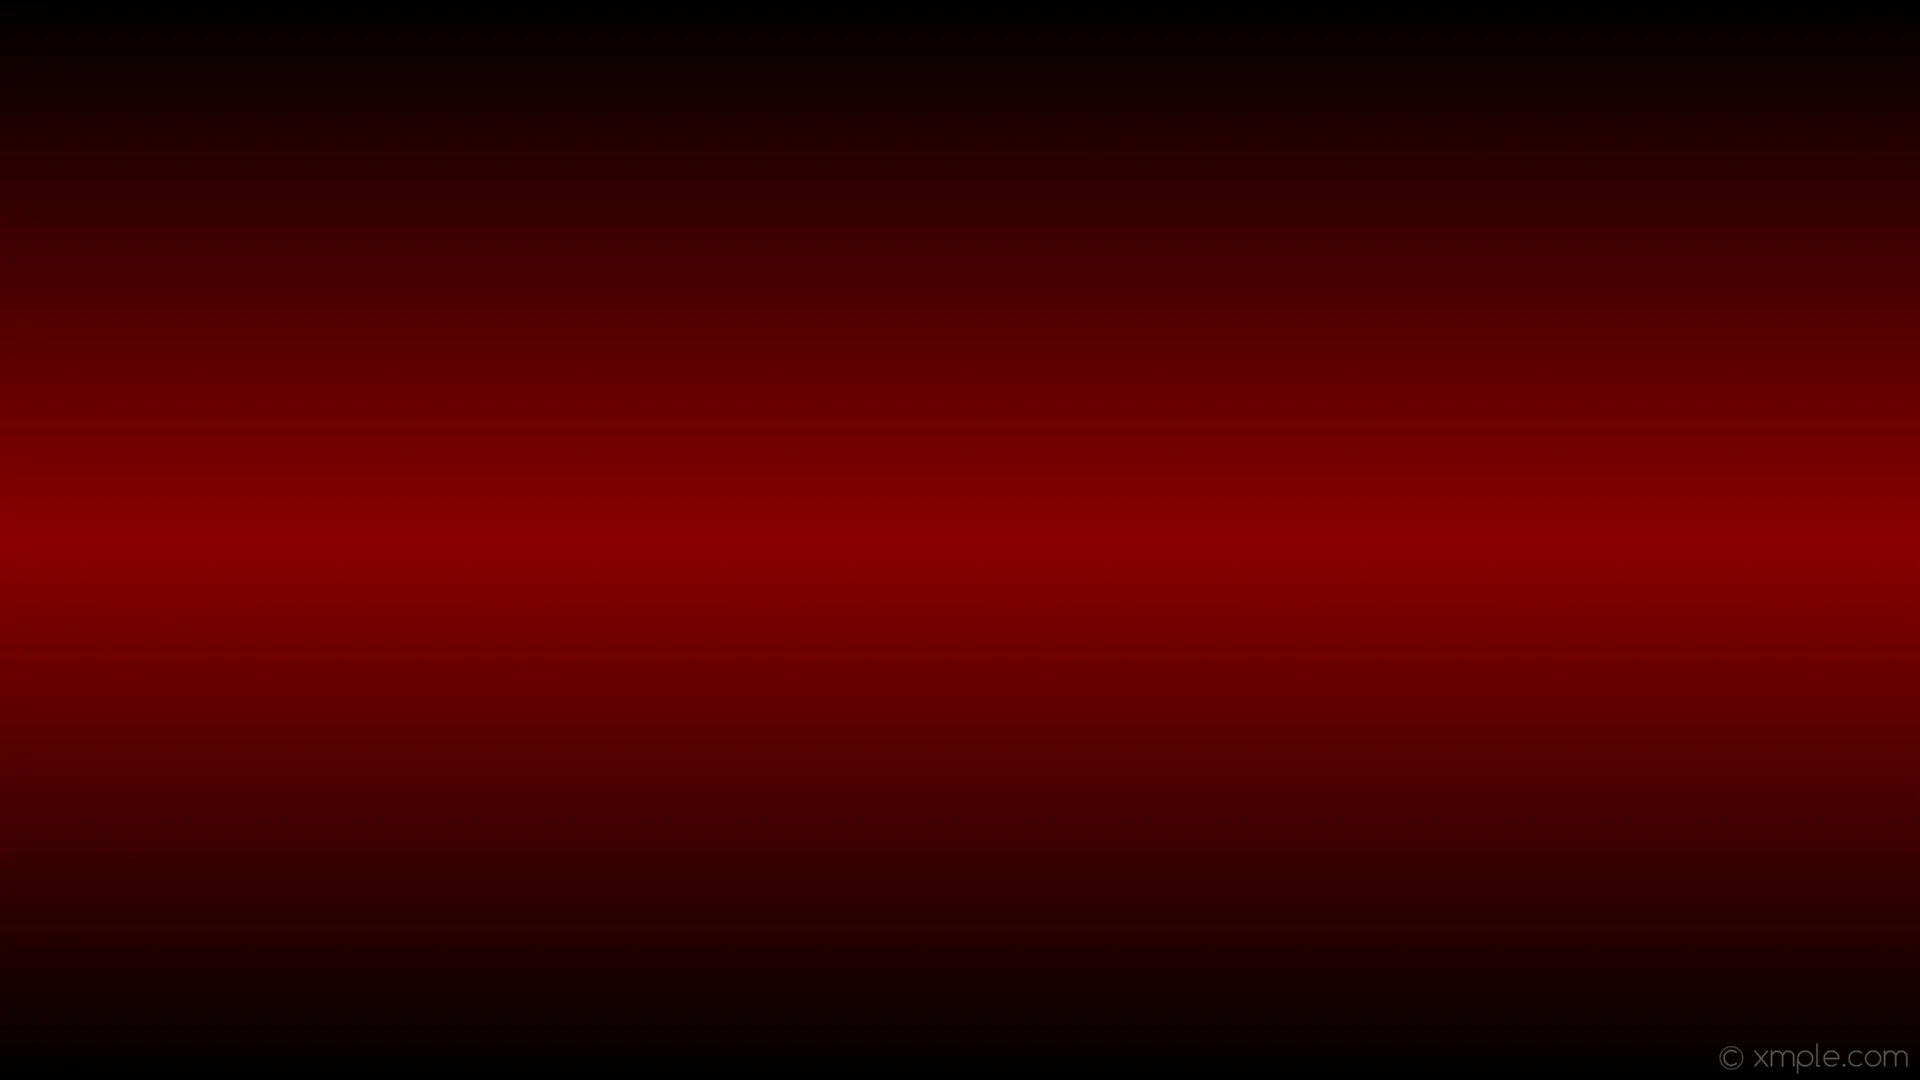 Wallpaper linear highlight red gradient black dark red b0000 270 50